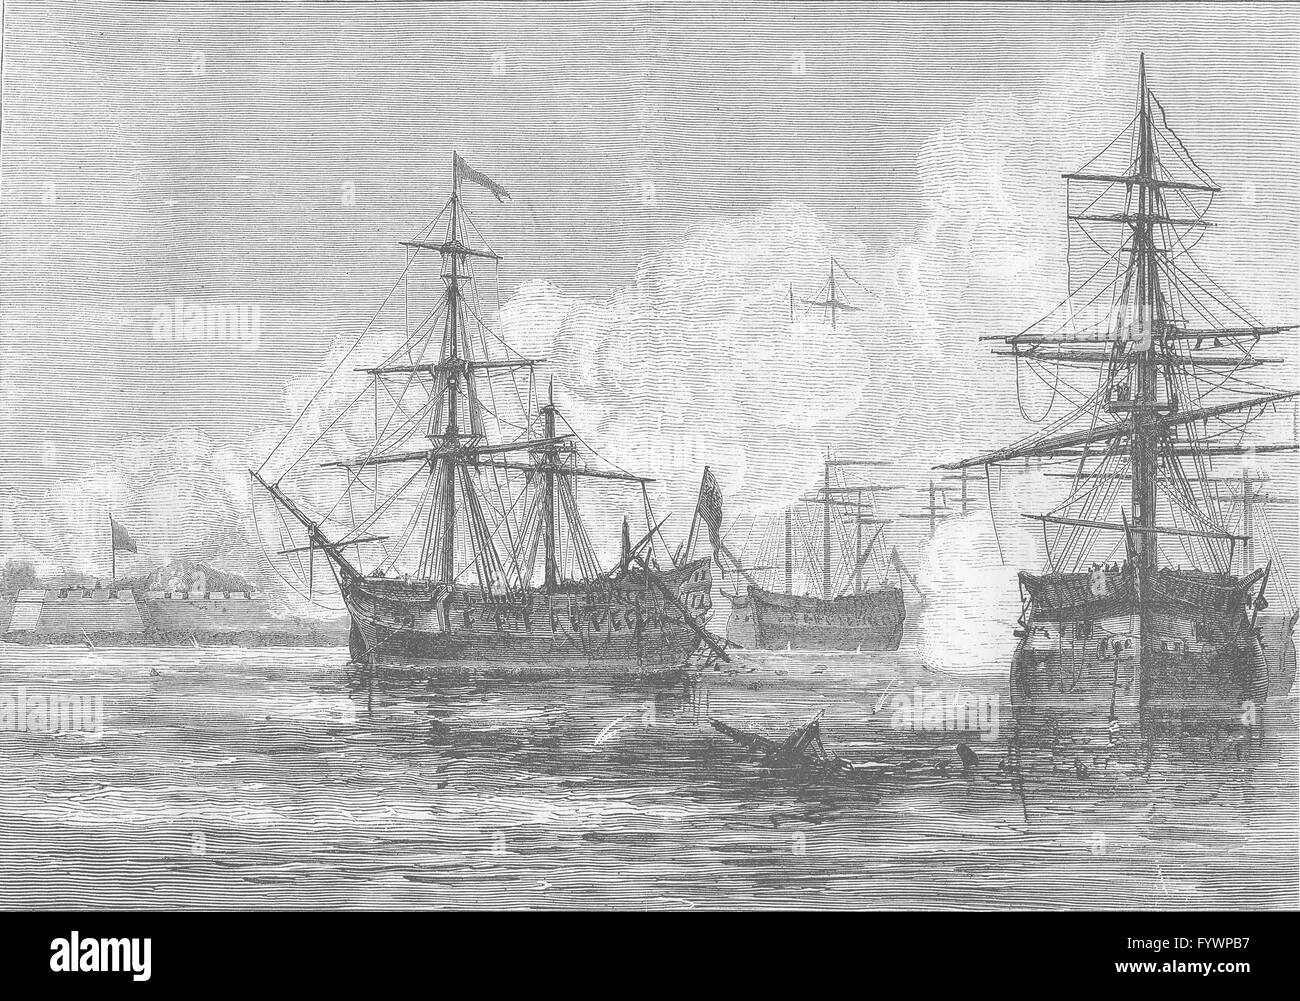 CAROLINA DEL SUR: Ataque en Sullivan's Island, grabado antiguo c1880 Foto de stock